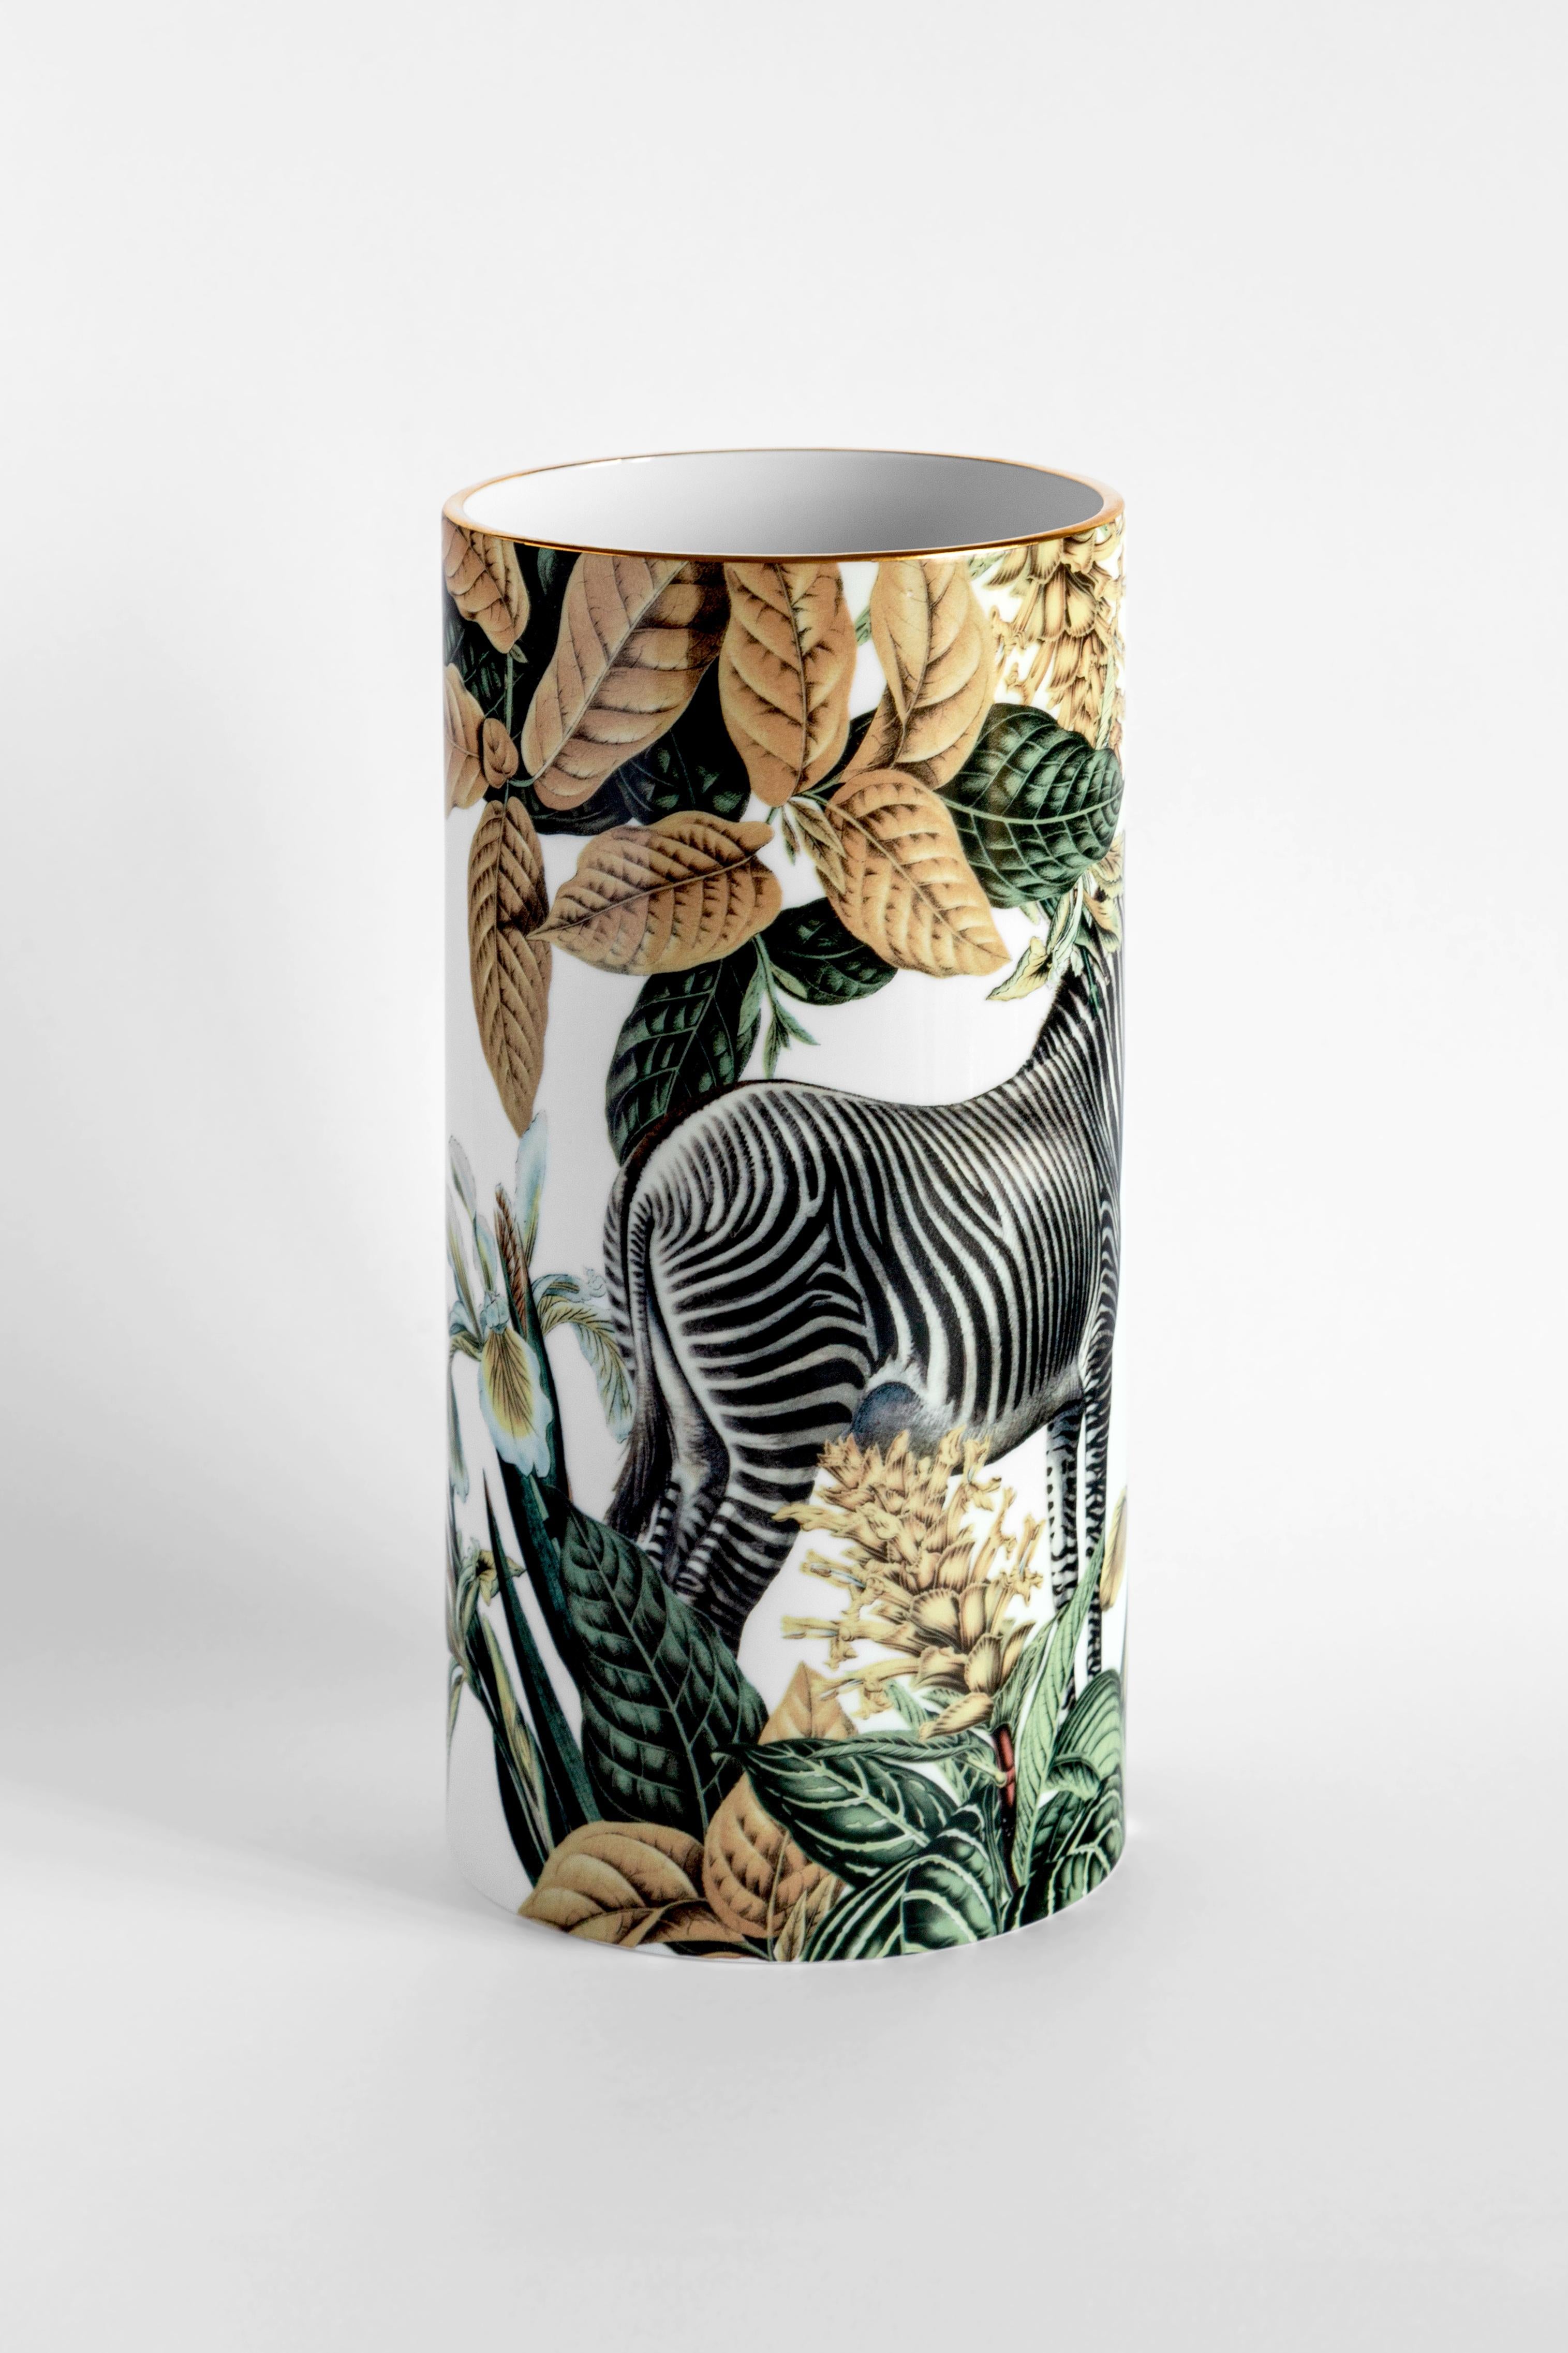 Die Vase von Vito Nesta zeigt ein afrikanisches Zebra, das von üppiger goldener, grüner und weißer Vegetation umgeben ist. Die Vase besticht durch ihre dynamisch tanzenden und leuchtenden Farben. Die prächtige Farbenpracht bringt Charme und Energie